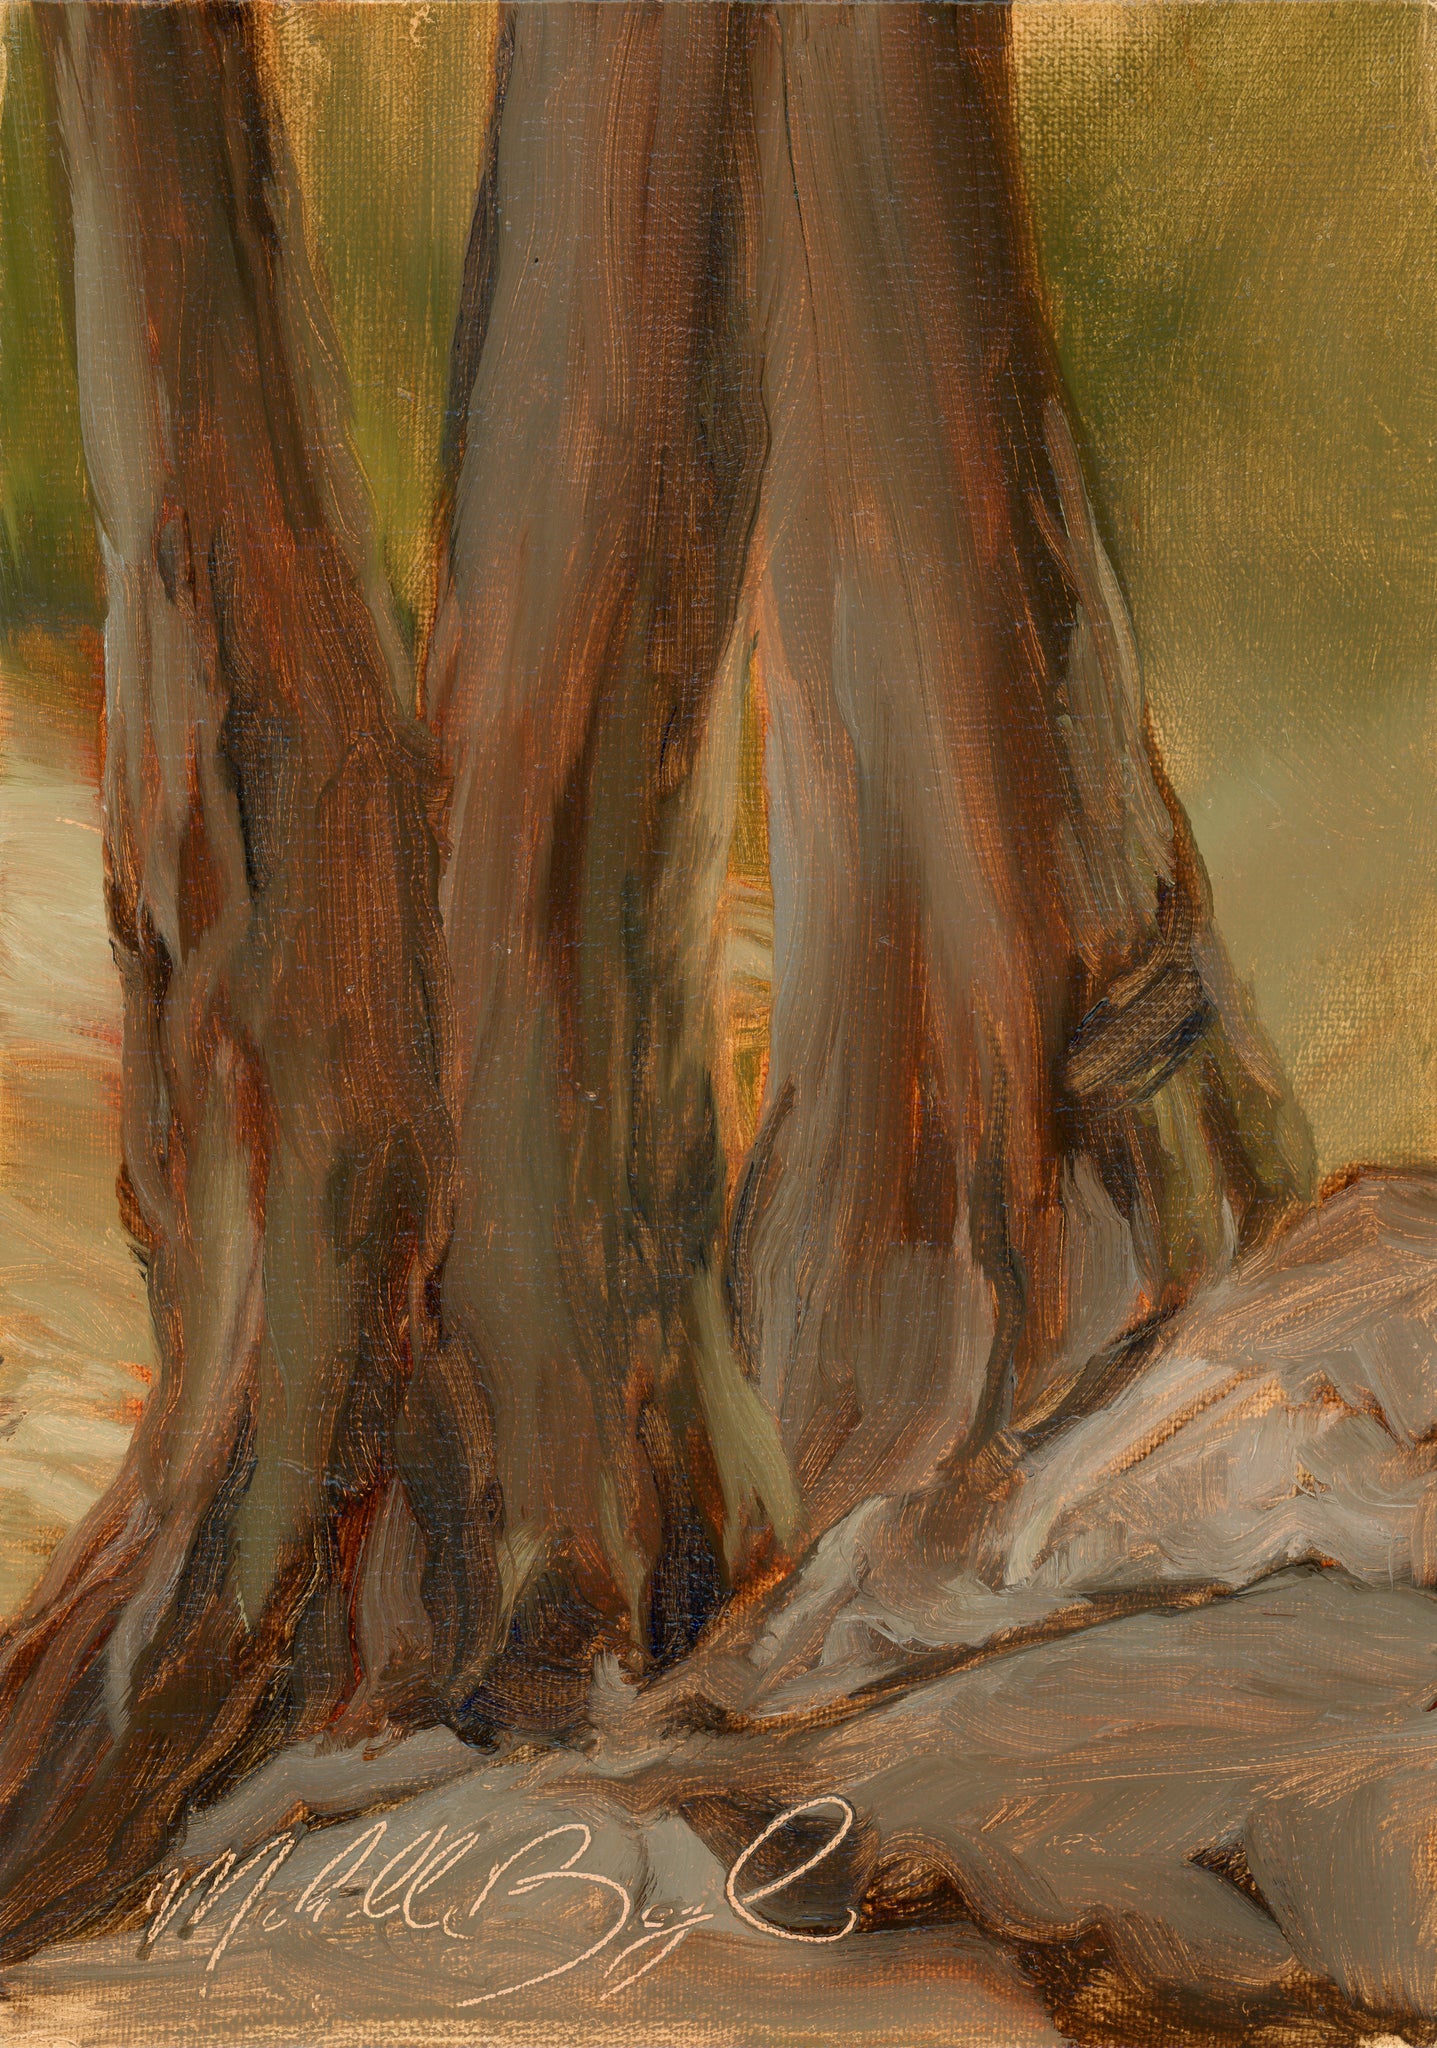 Knobby Trees - 5x7" Original Painting